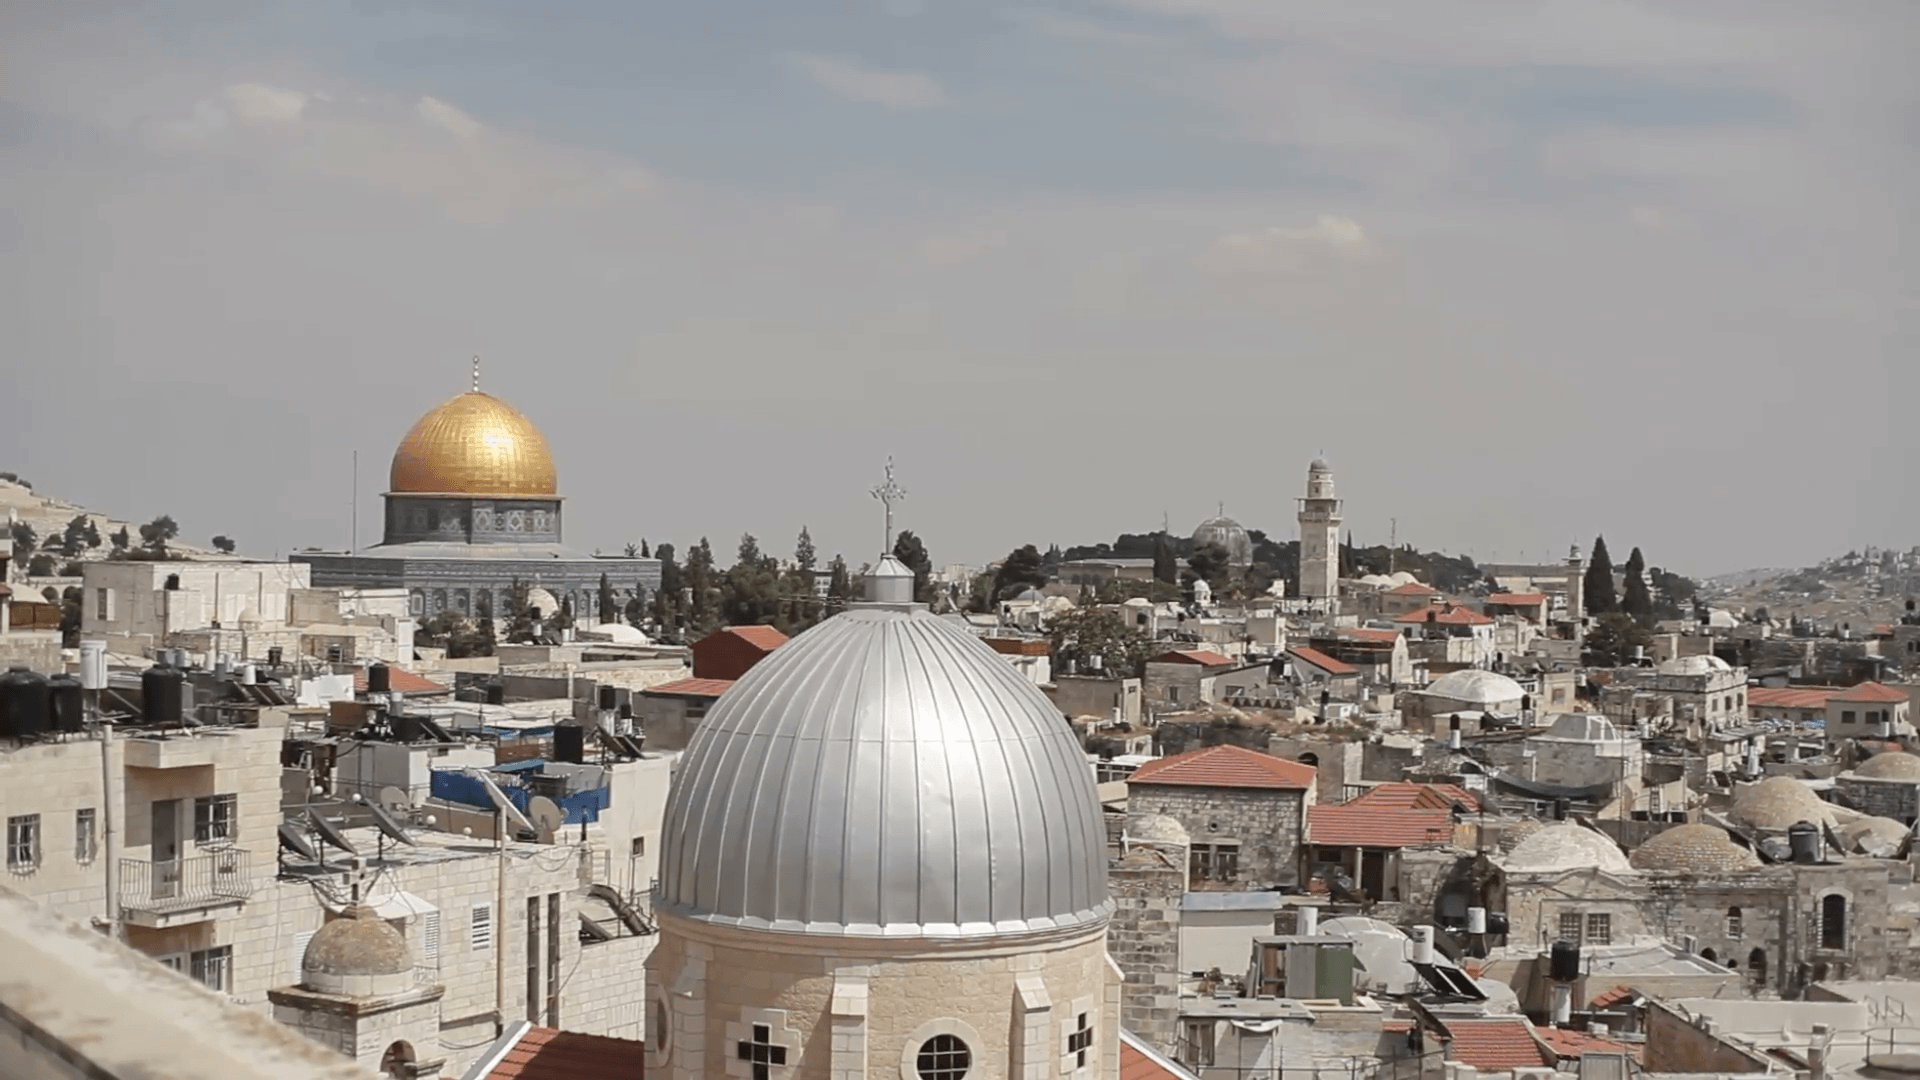 Dome of the Rock Al Aqsa mosque, Temple Mount, Jerusalem, Israel